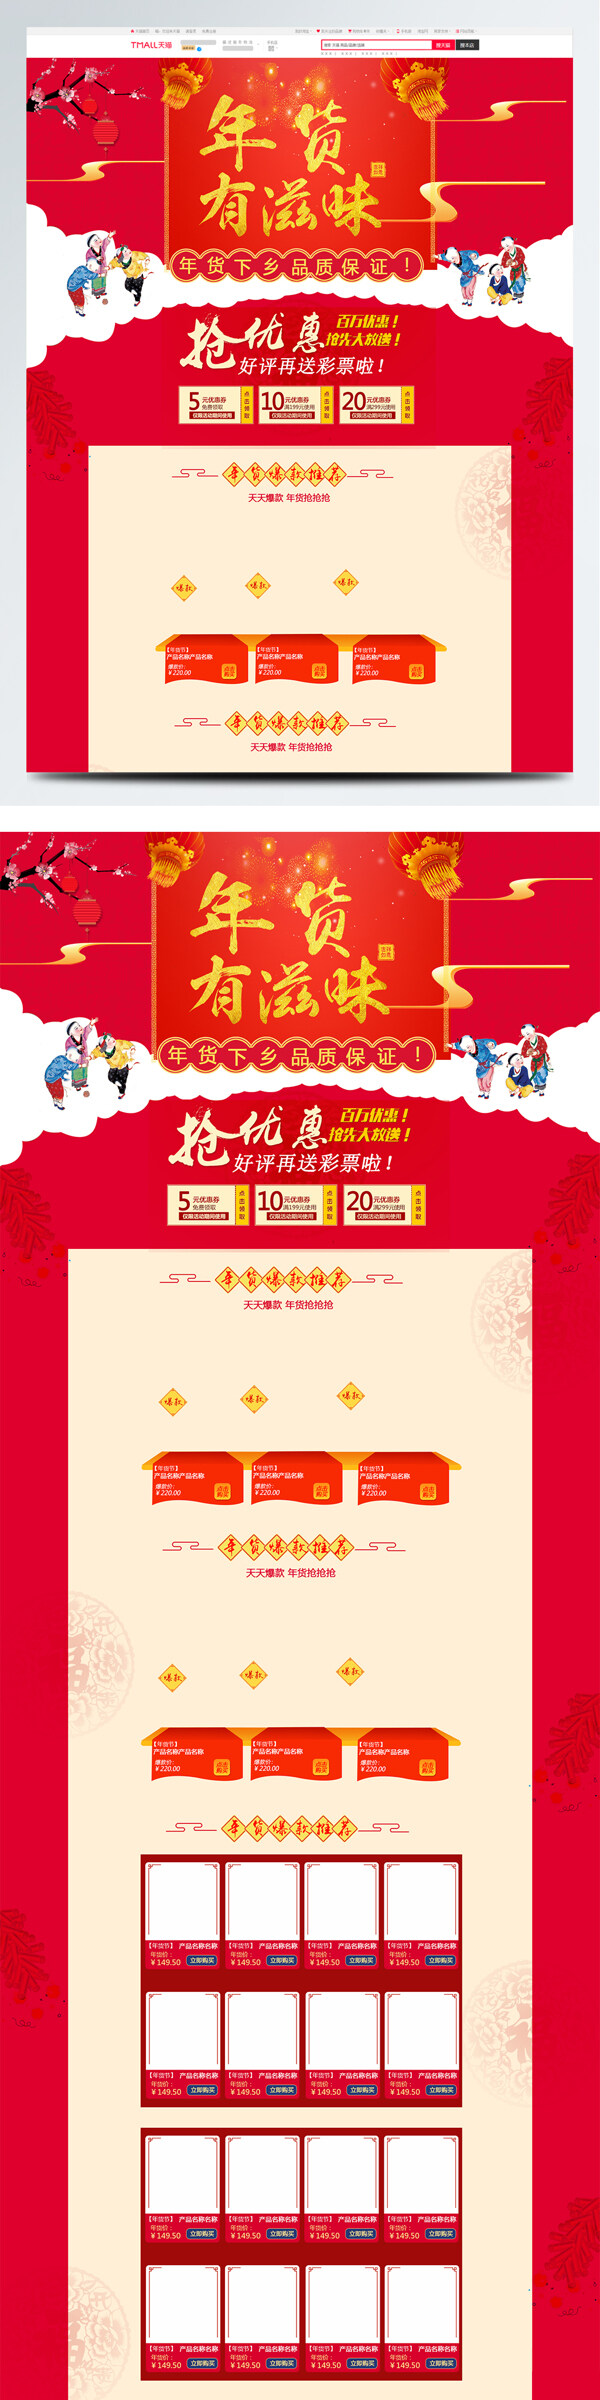 红色中国风天猫淘宝年货节大米首页促销模板